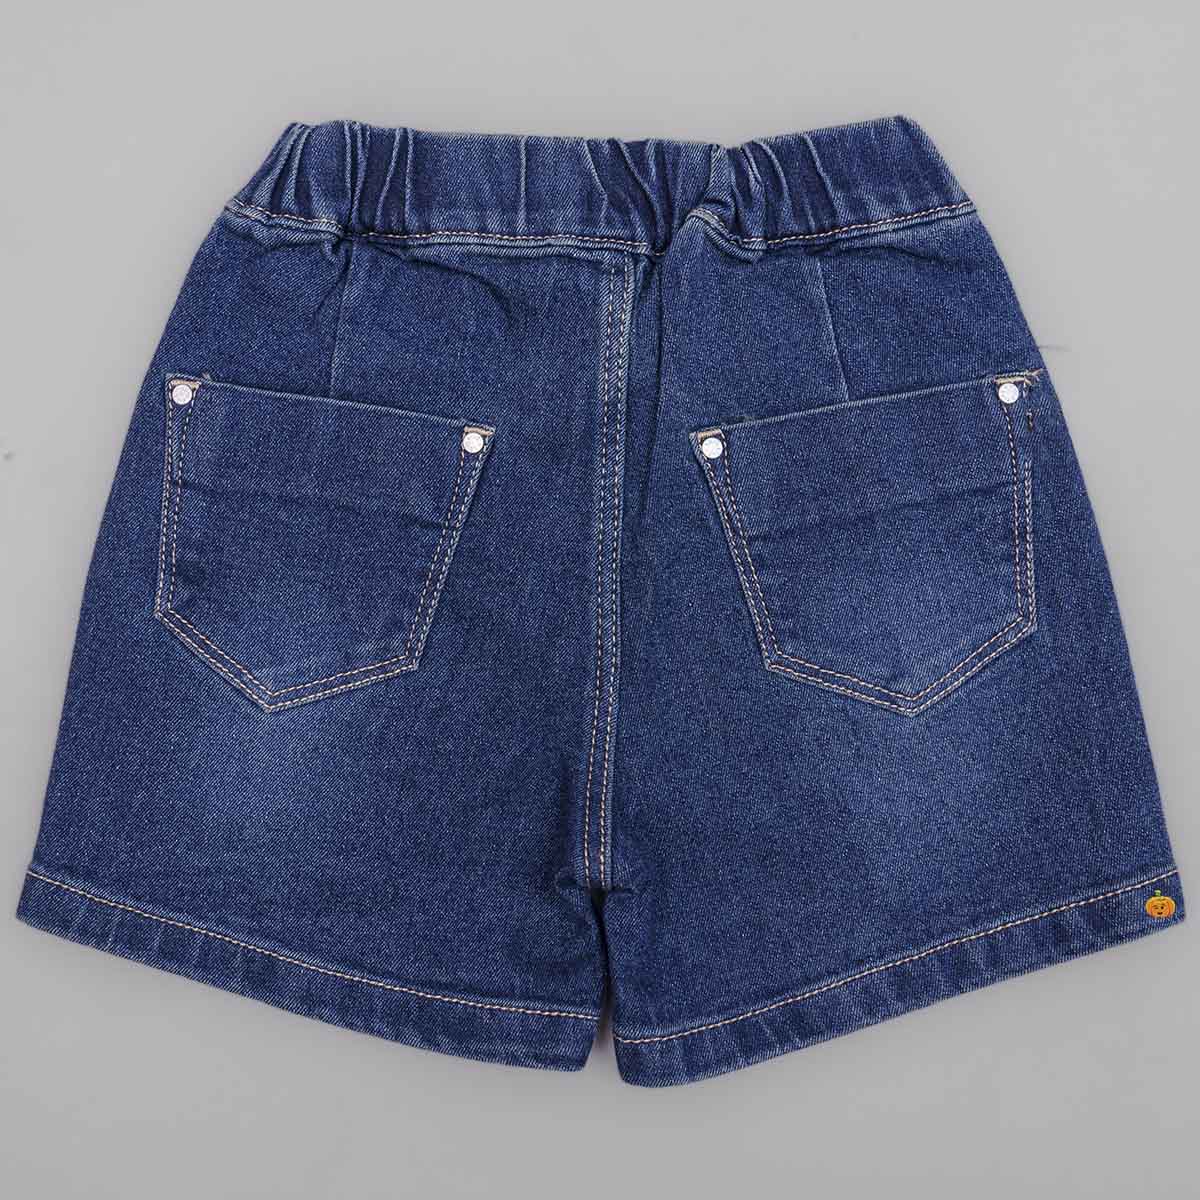 Women High Waist Ripped Frayed Denim Shorts Summer Casual Short Jeans Hot  Pants | Fruugo KR